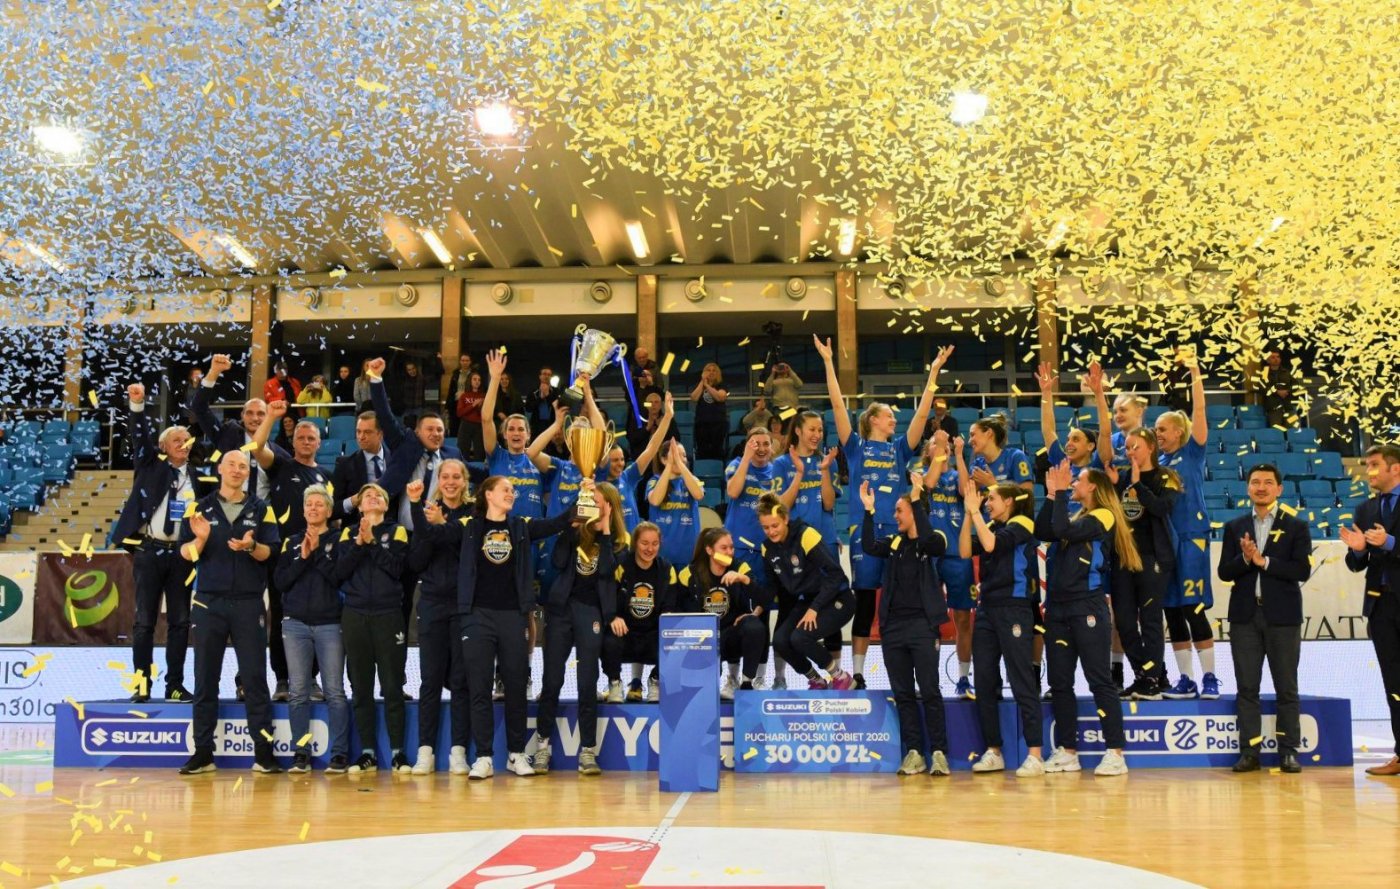 Koszykarki Arki Gdynia i GTK Arki Gdynia świętują zdobycie Pucharu Polski 2020